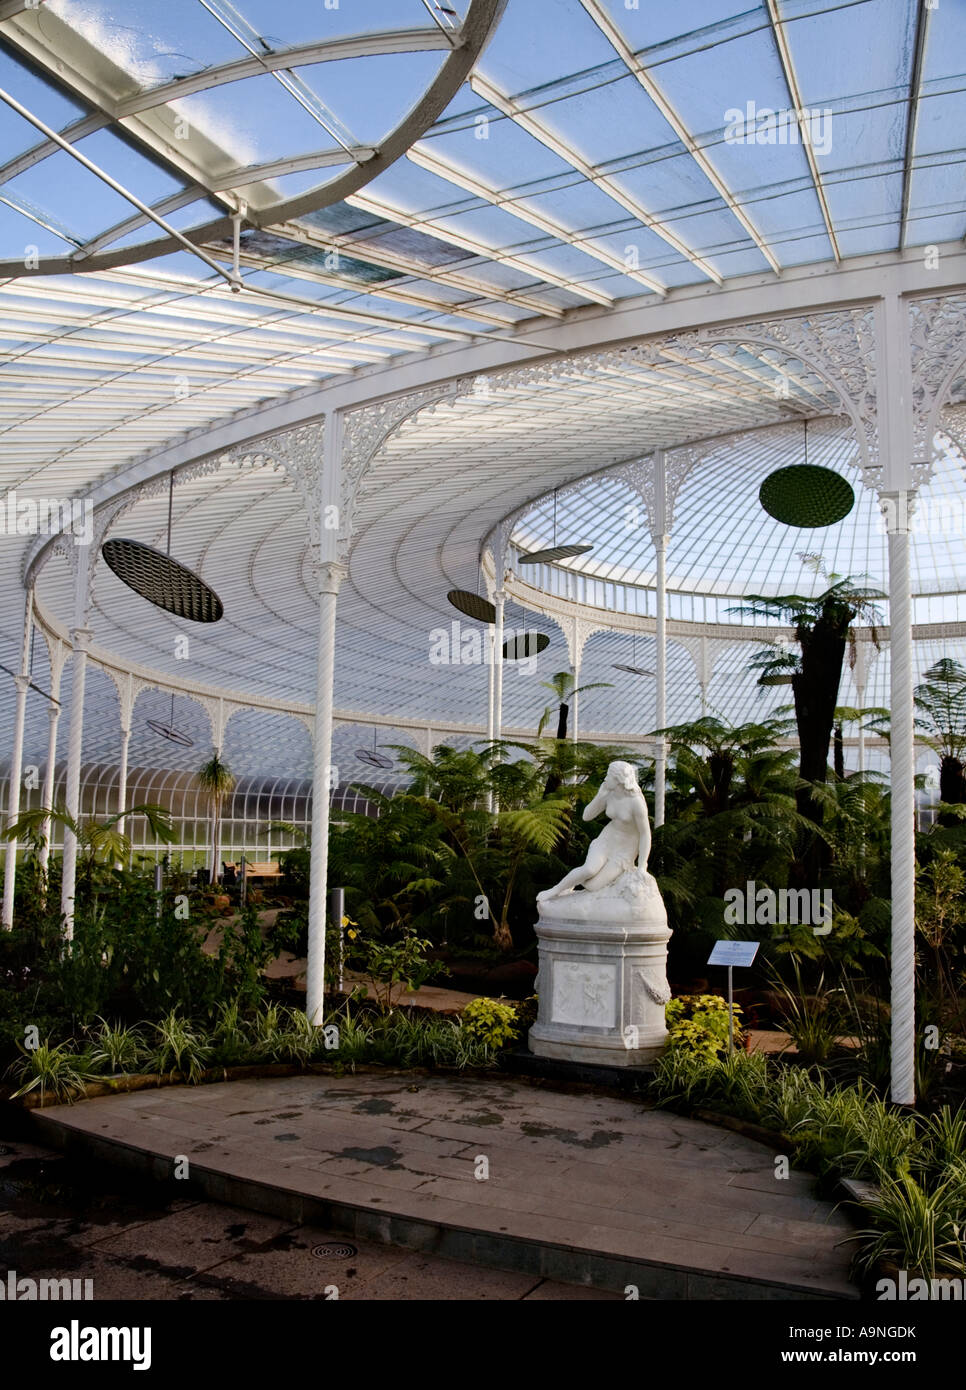 Kibble Palace serre victorienne aux jardins botaniques, Glasgow, Ecosse. Banque D'Images